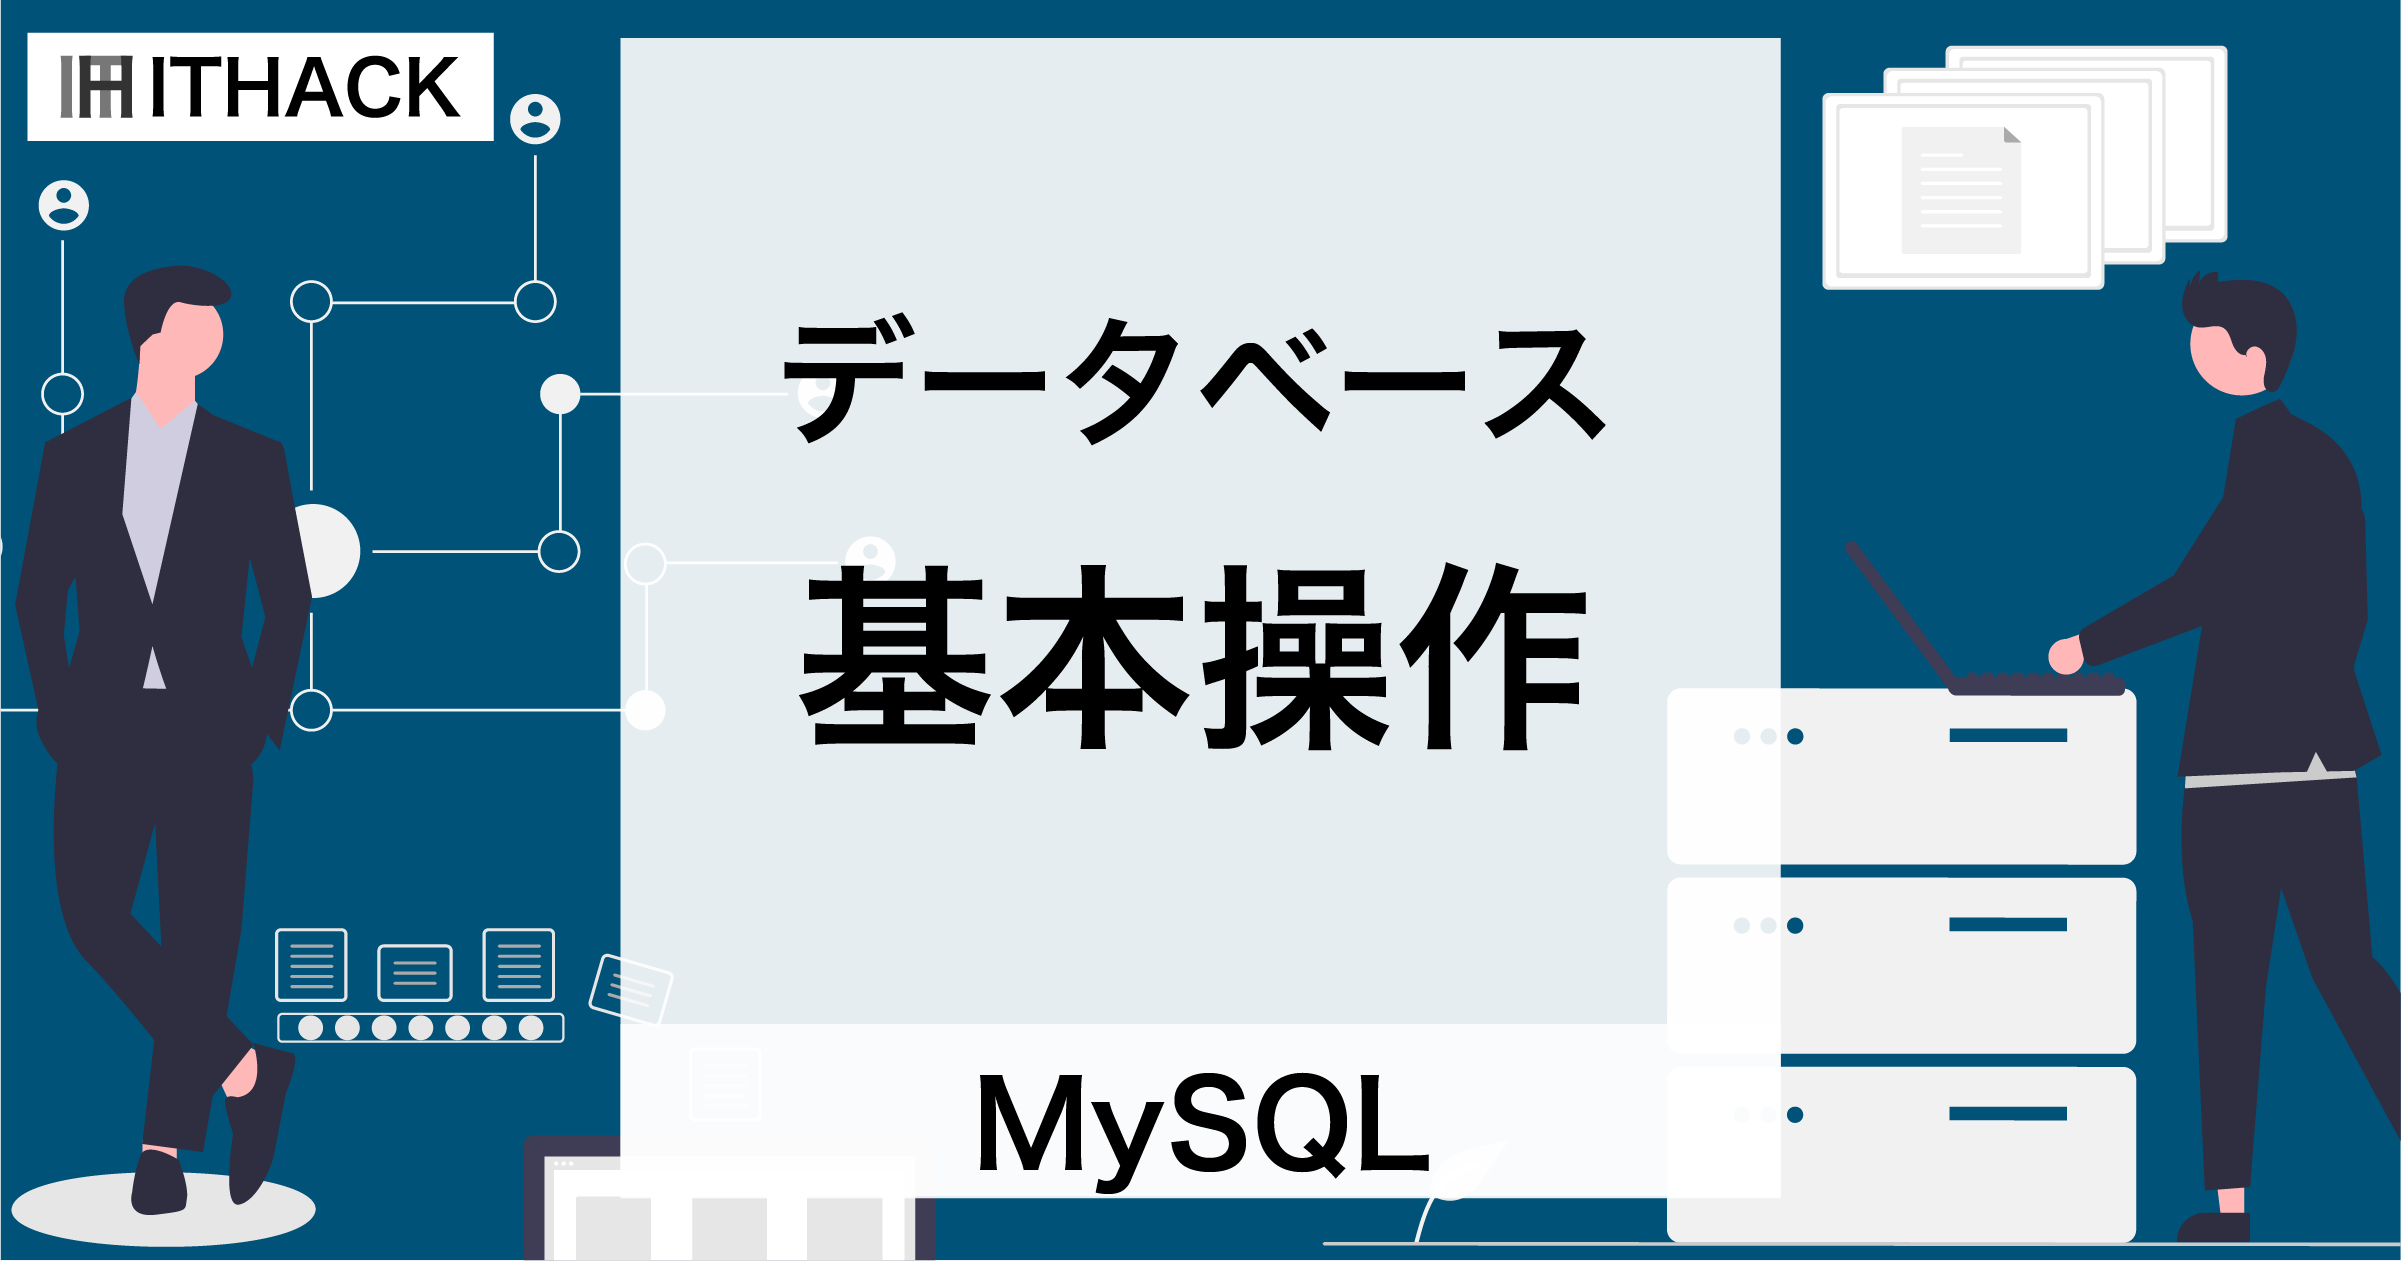 【MySQL】データベースの基本操作 - 作成・情報表示・削除・使用選択